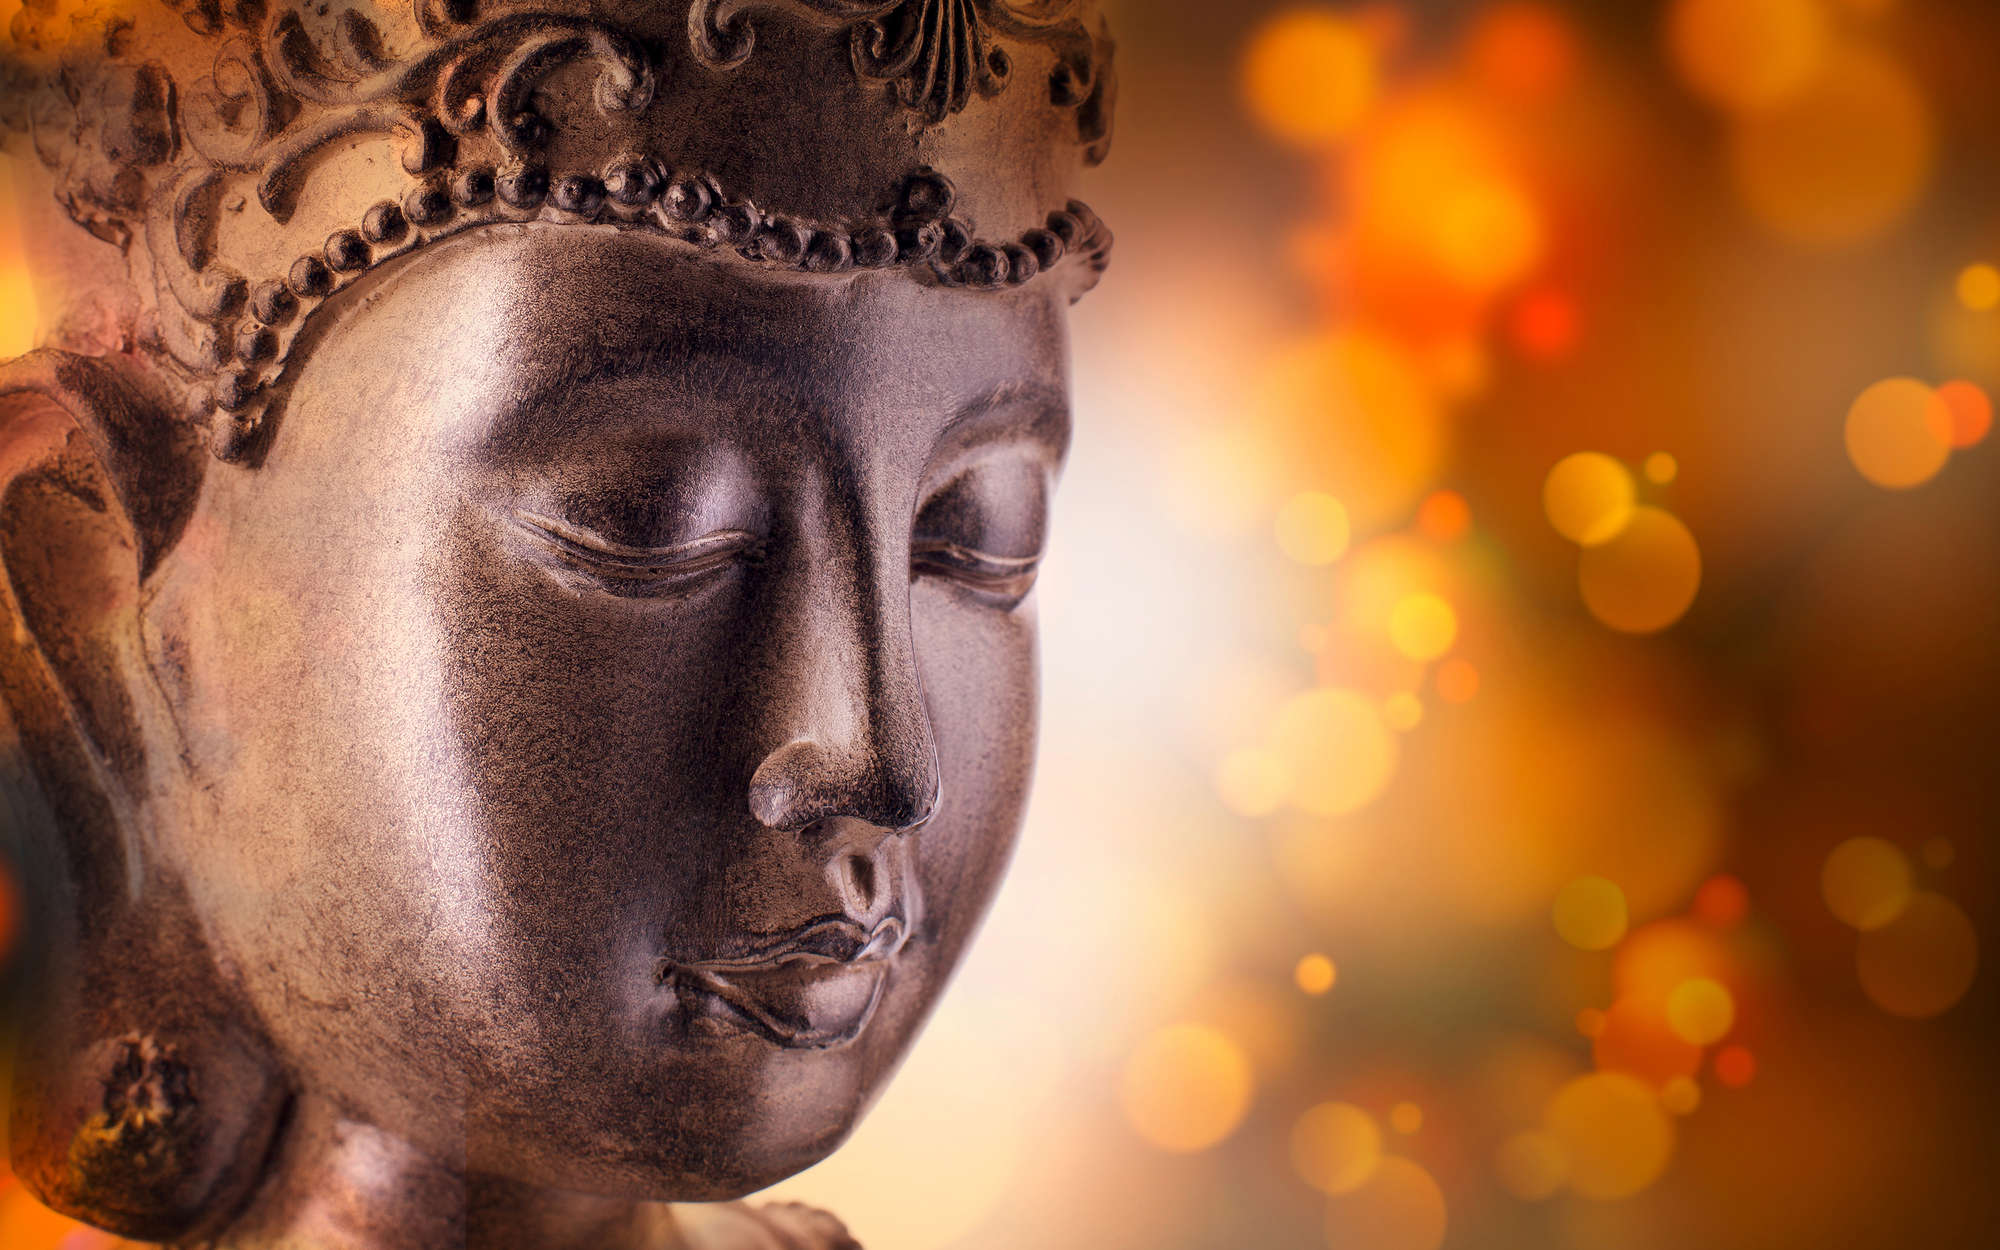             Fototapete Detailaufnahme von Buddha-Statue – Strukturiertes Vlies
        